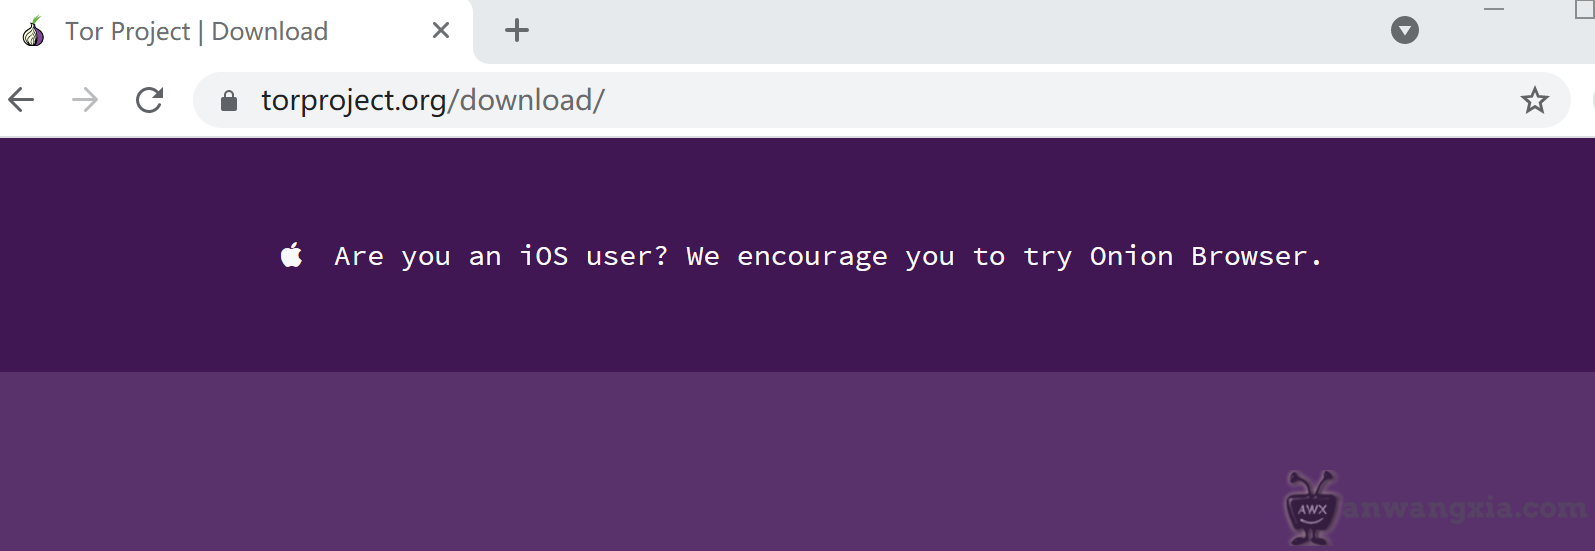 Tor browser скачать для ios бесплатно hyrda вход информация о браузере тор hyrda вход